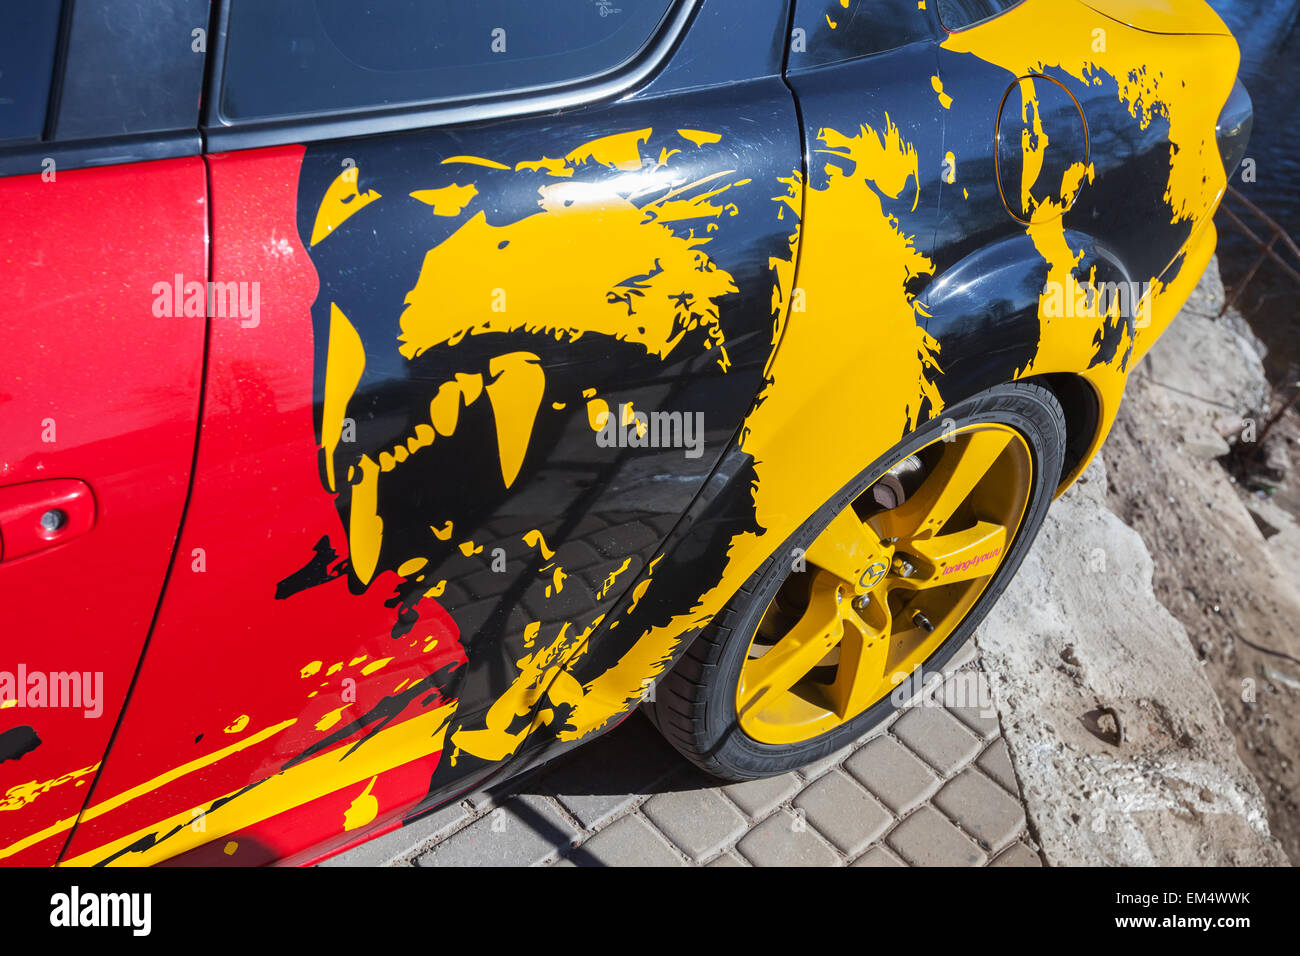 Saint-pétersbourg, Russie - le 11 avril 2015 : Fragment de voiture Mazda sportive avec un prédateur agressif peignant un corps rouge Banque D'Images